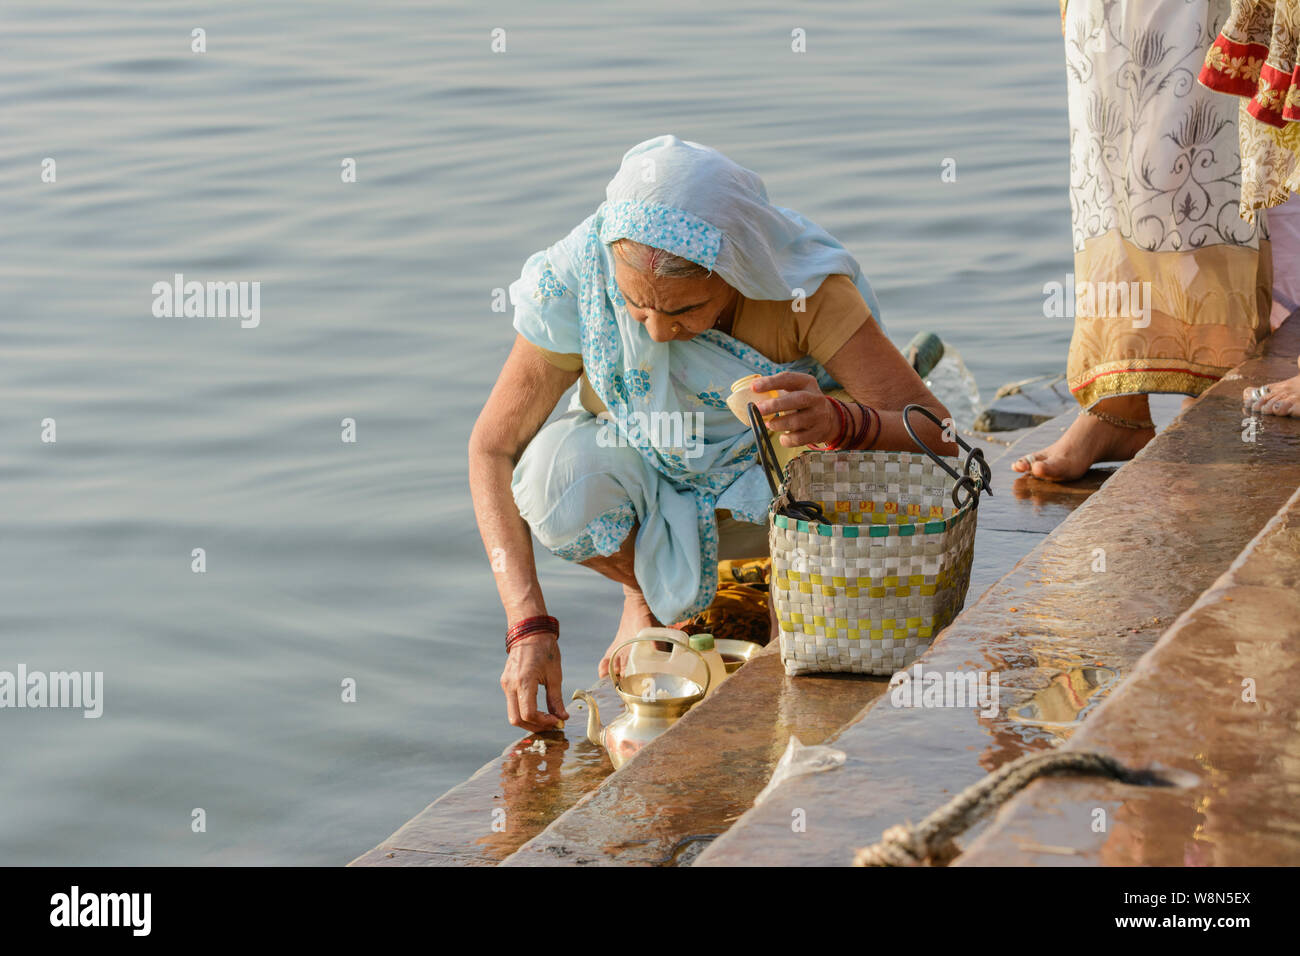 Une vieille femme hindoue indienne dans un sari prépare une offrande aux dieux sur les rives du Gange, Varanasi, Uttar Pradesh, Inde, Asie du Sud. Banque D'Images